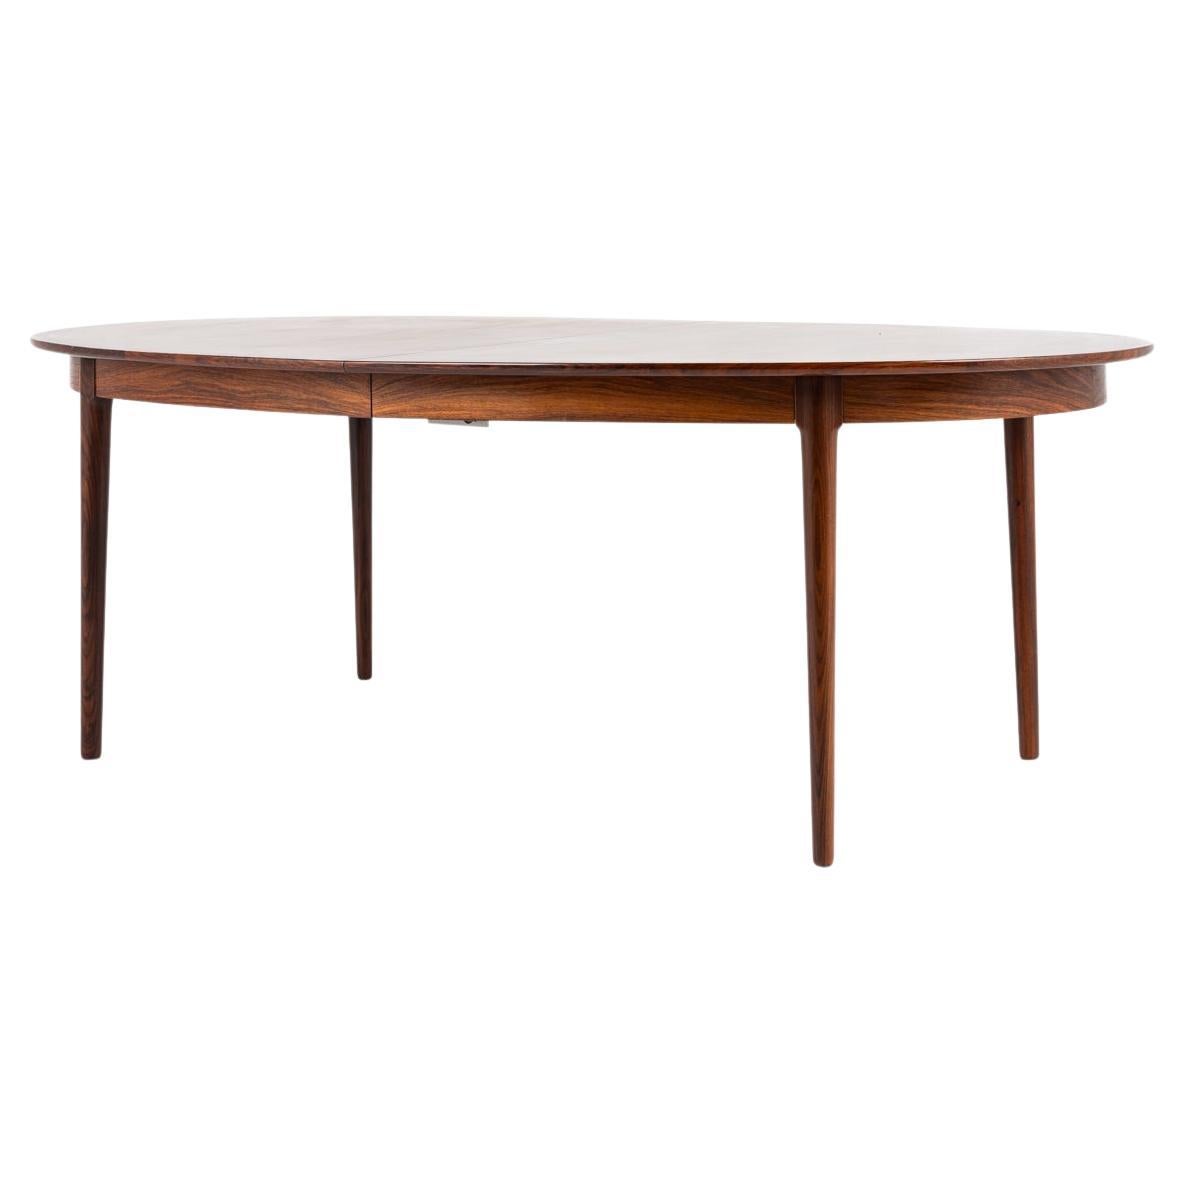 Oval rosewood dining table by Torbjørn Afdal